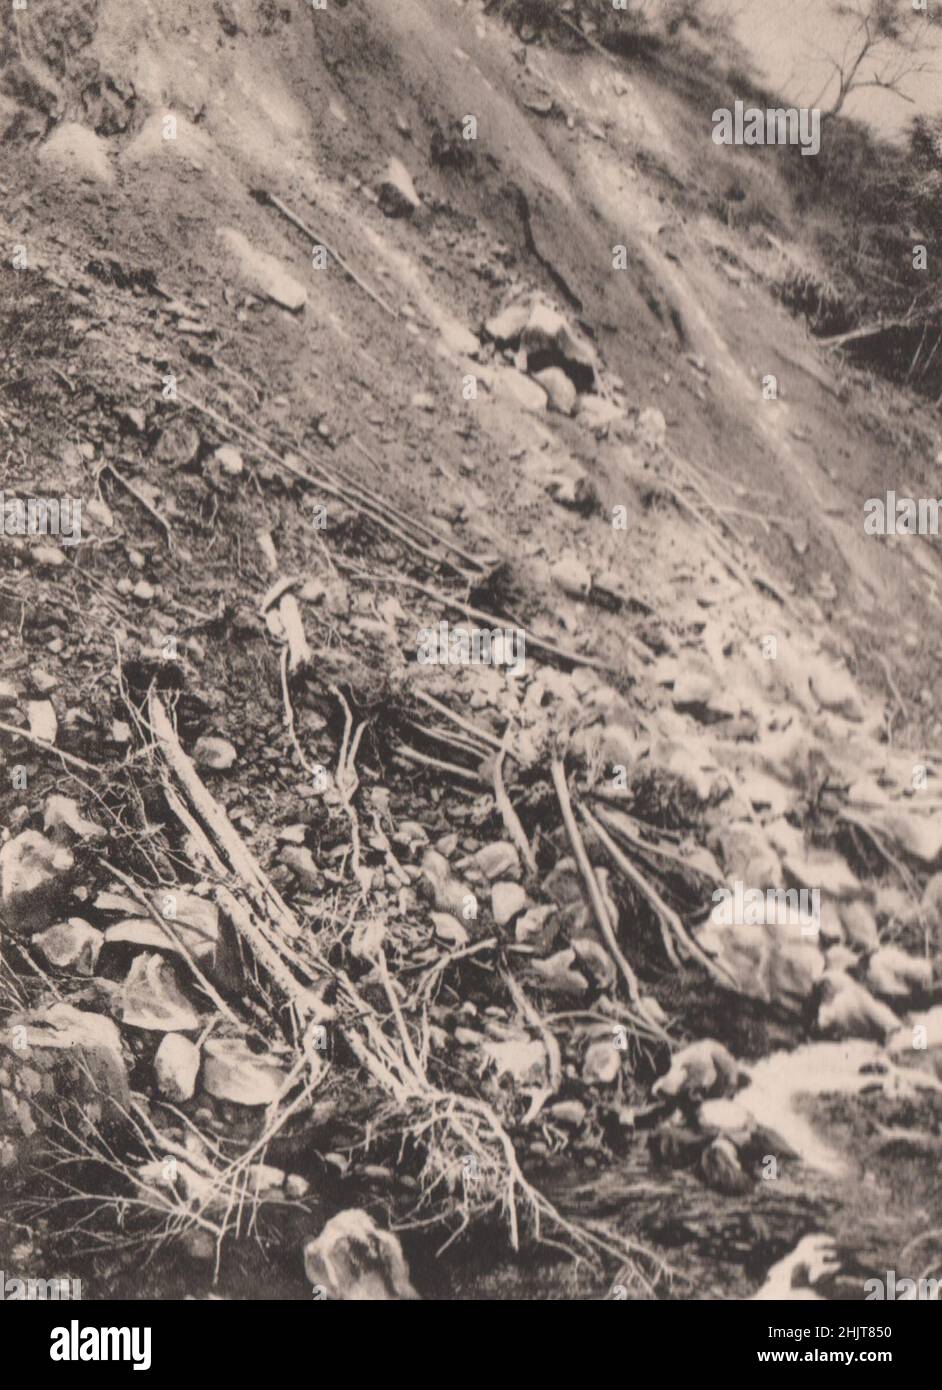 Giappone terremoto 1923: Frane nelle montagne di Hakone Foto Stock